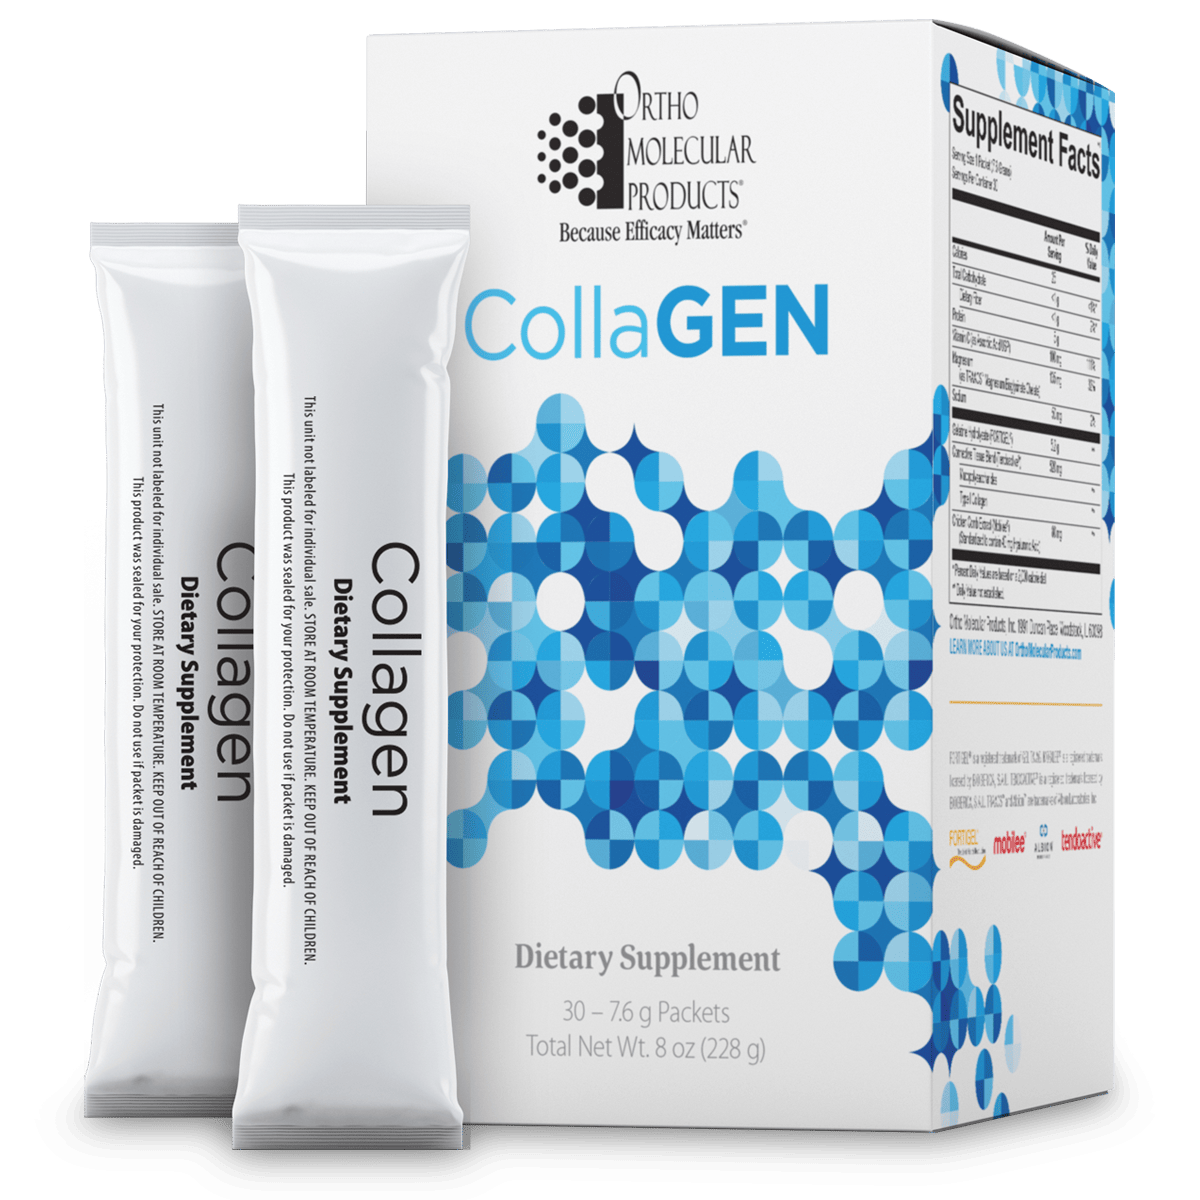 Стик collagen. Первый живой коллаген стик пакет. Collagen 3g. Collagen-Stick-shot Swiss. Swiss Collagen Stick shot more more.